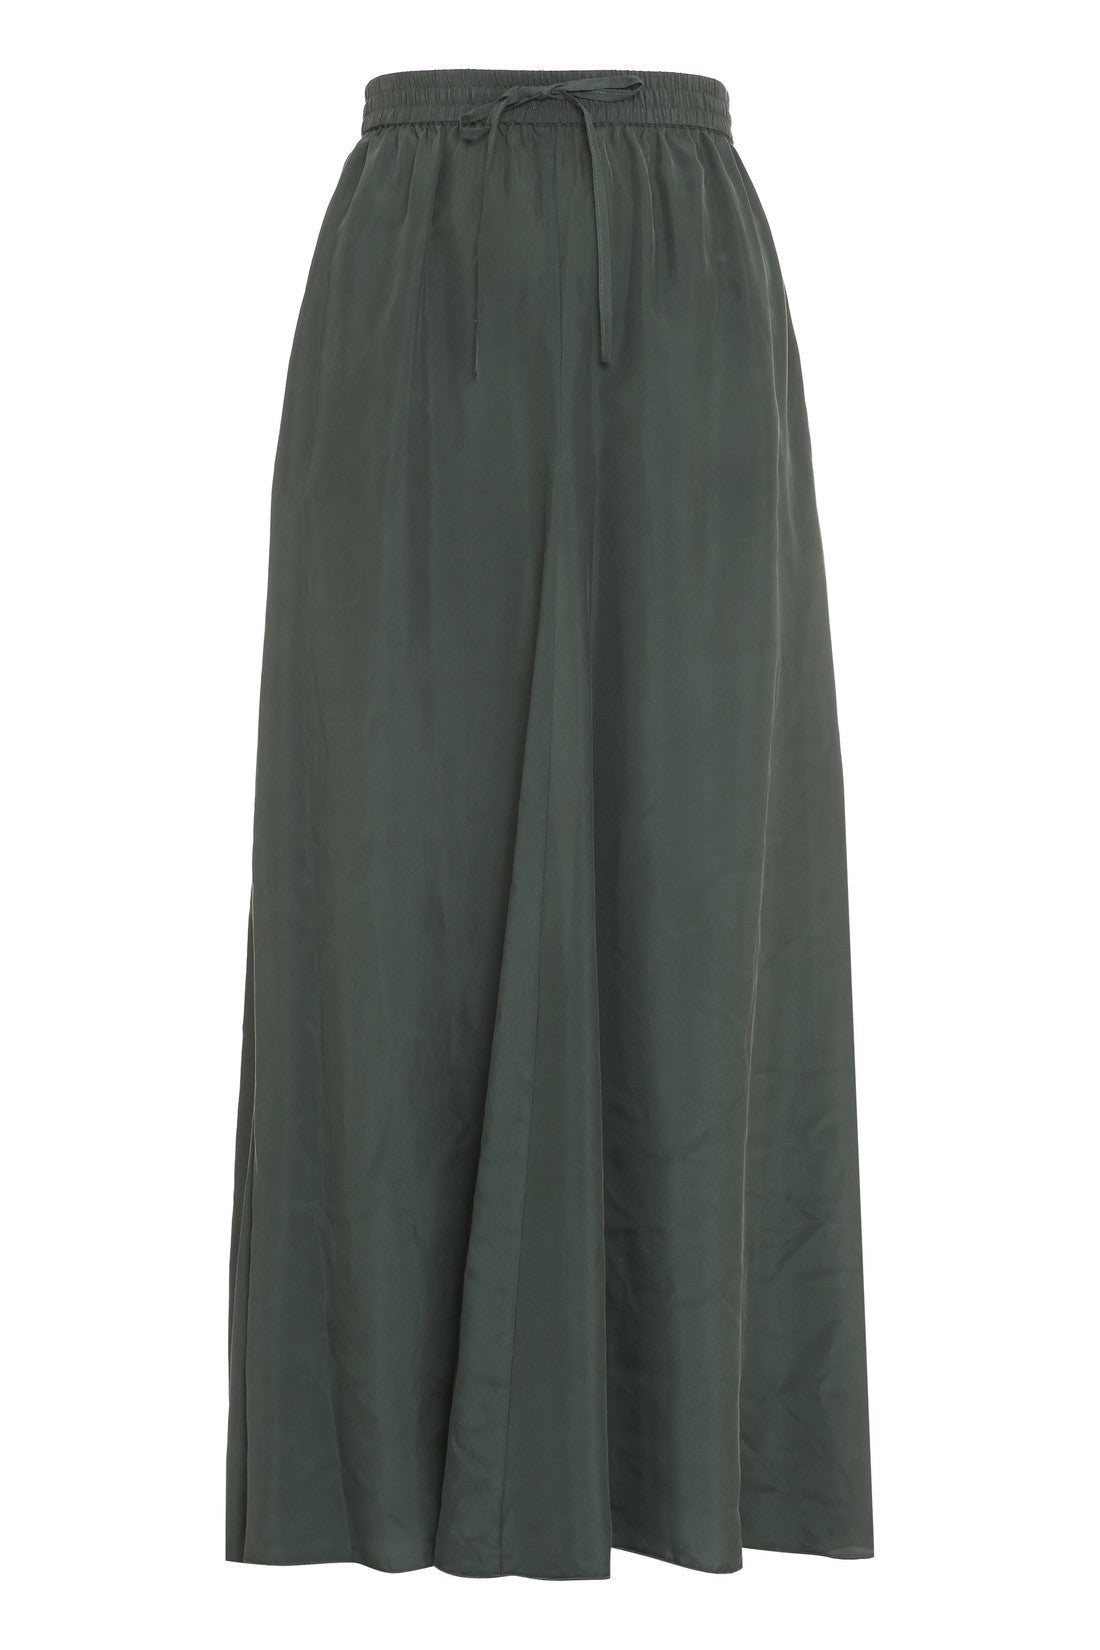 Parosh-OUTLET-SALE-Silk maxi skirt-ARCHIVIST